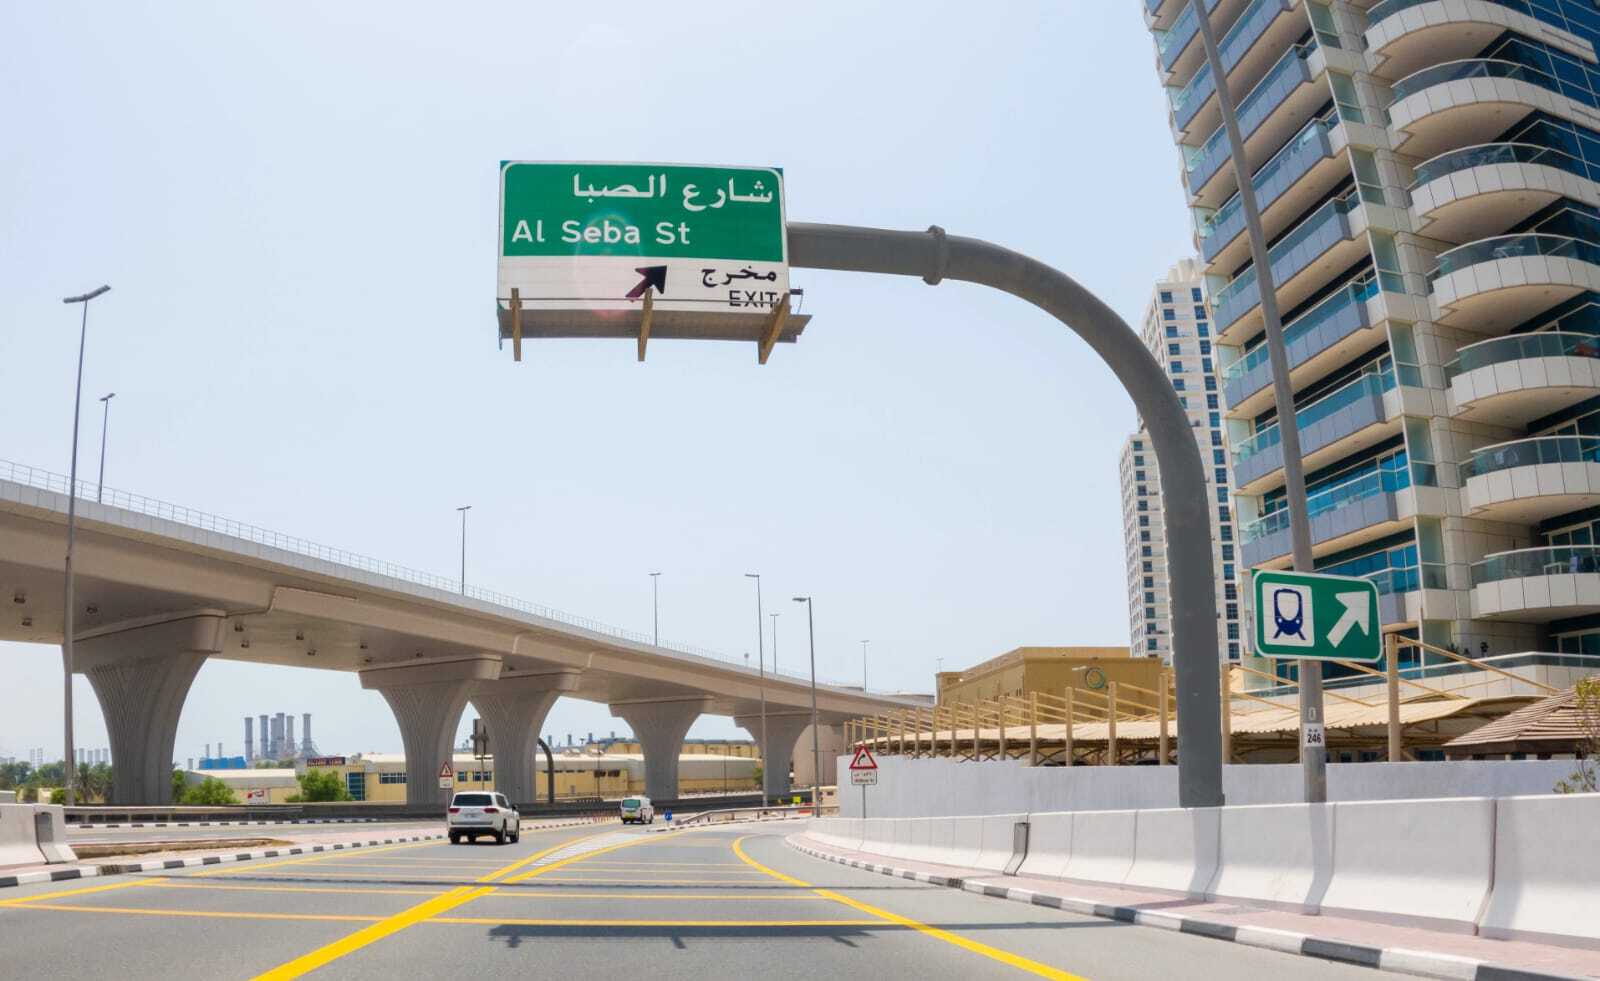 (طرق دبي) تنجز أعمال التحسين والحلول المرورية السريعة على شارع الصبا